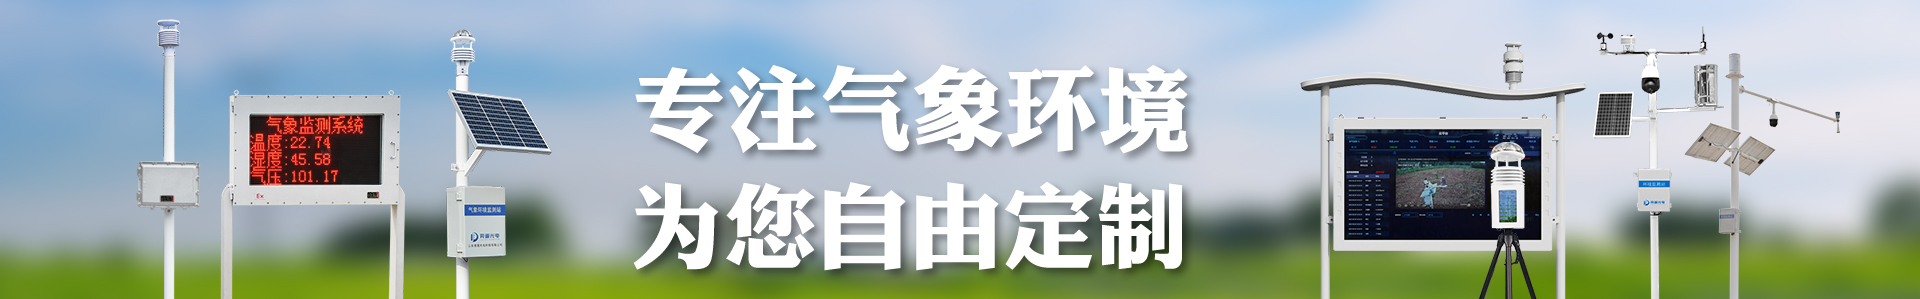 气象水文雨测设备展示视频-自动气象站-小型气象站-防爆气象站-光伏气象站-开元旗牌·(中国)官方网站